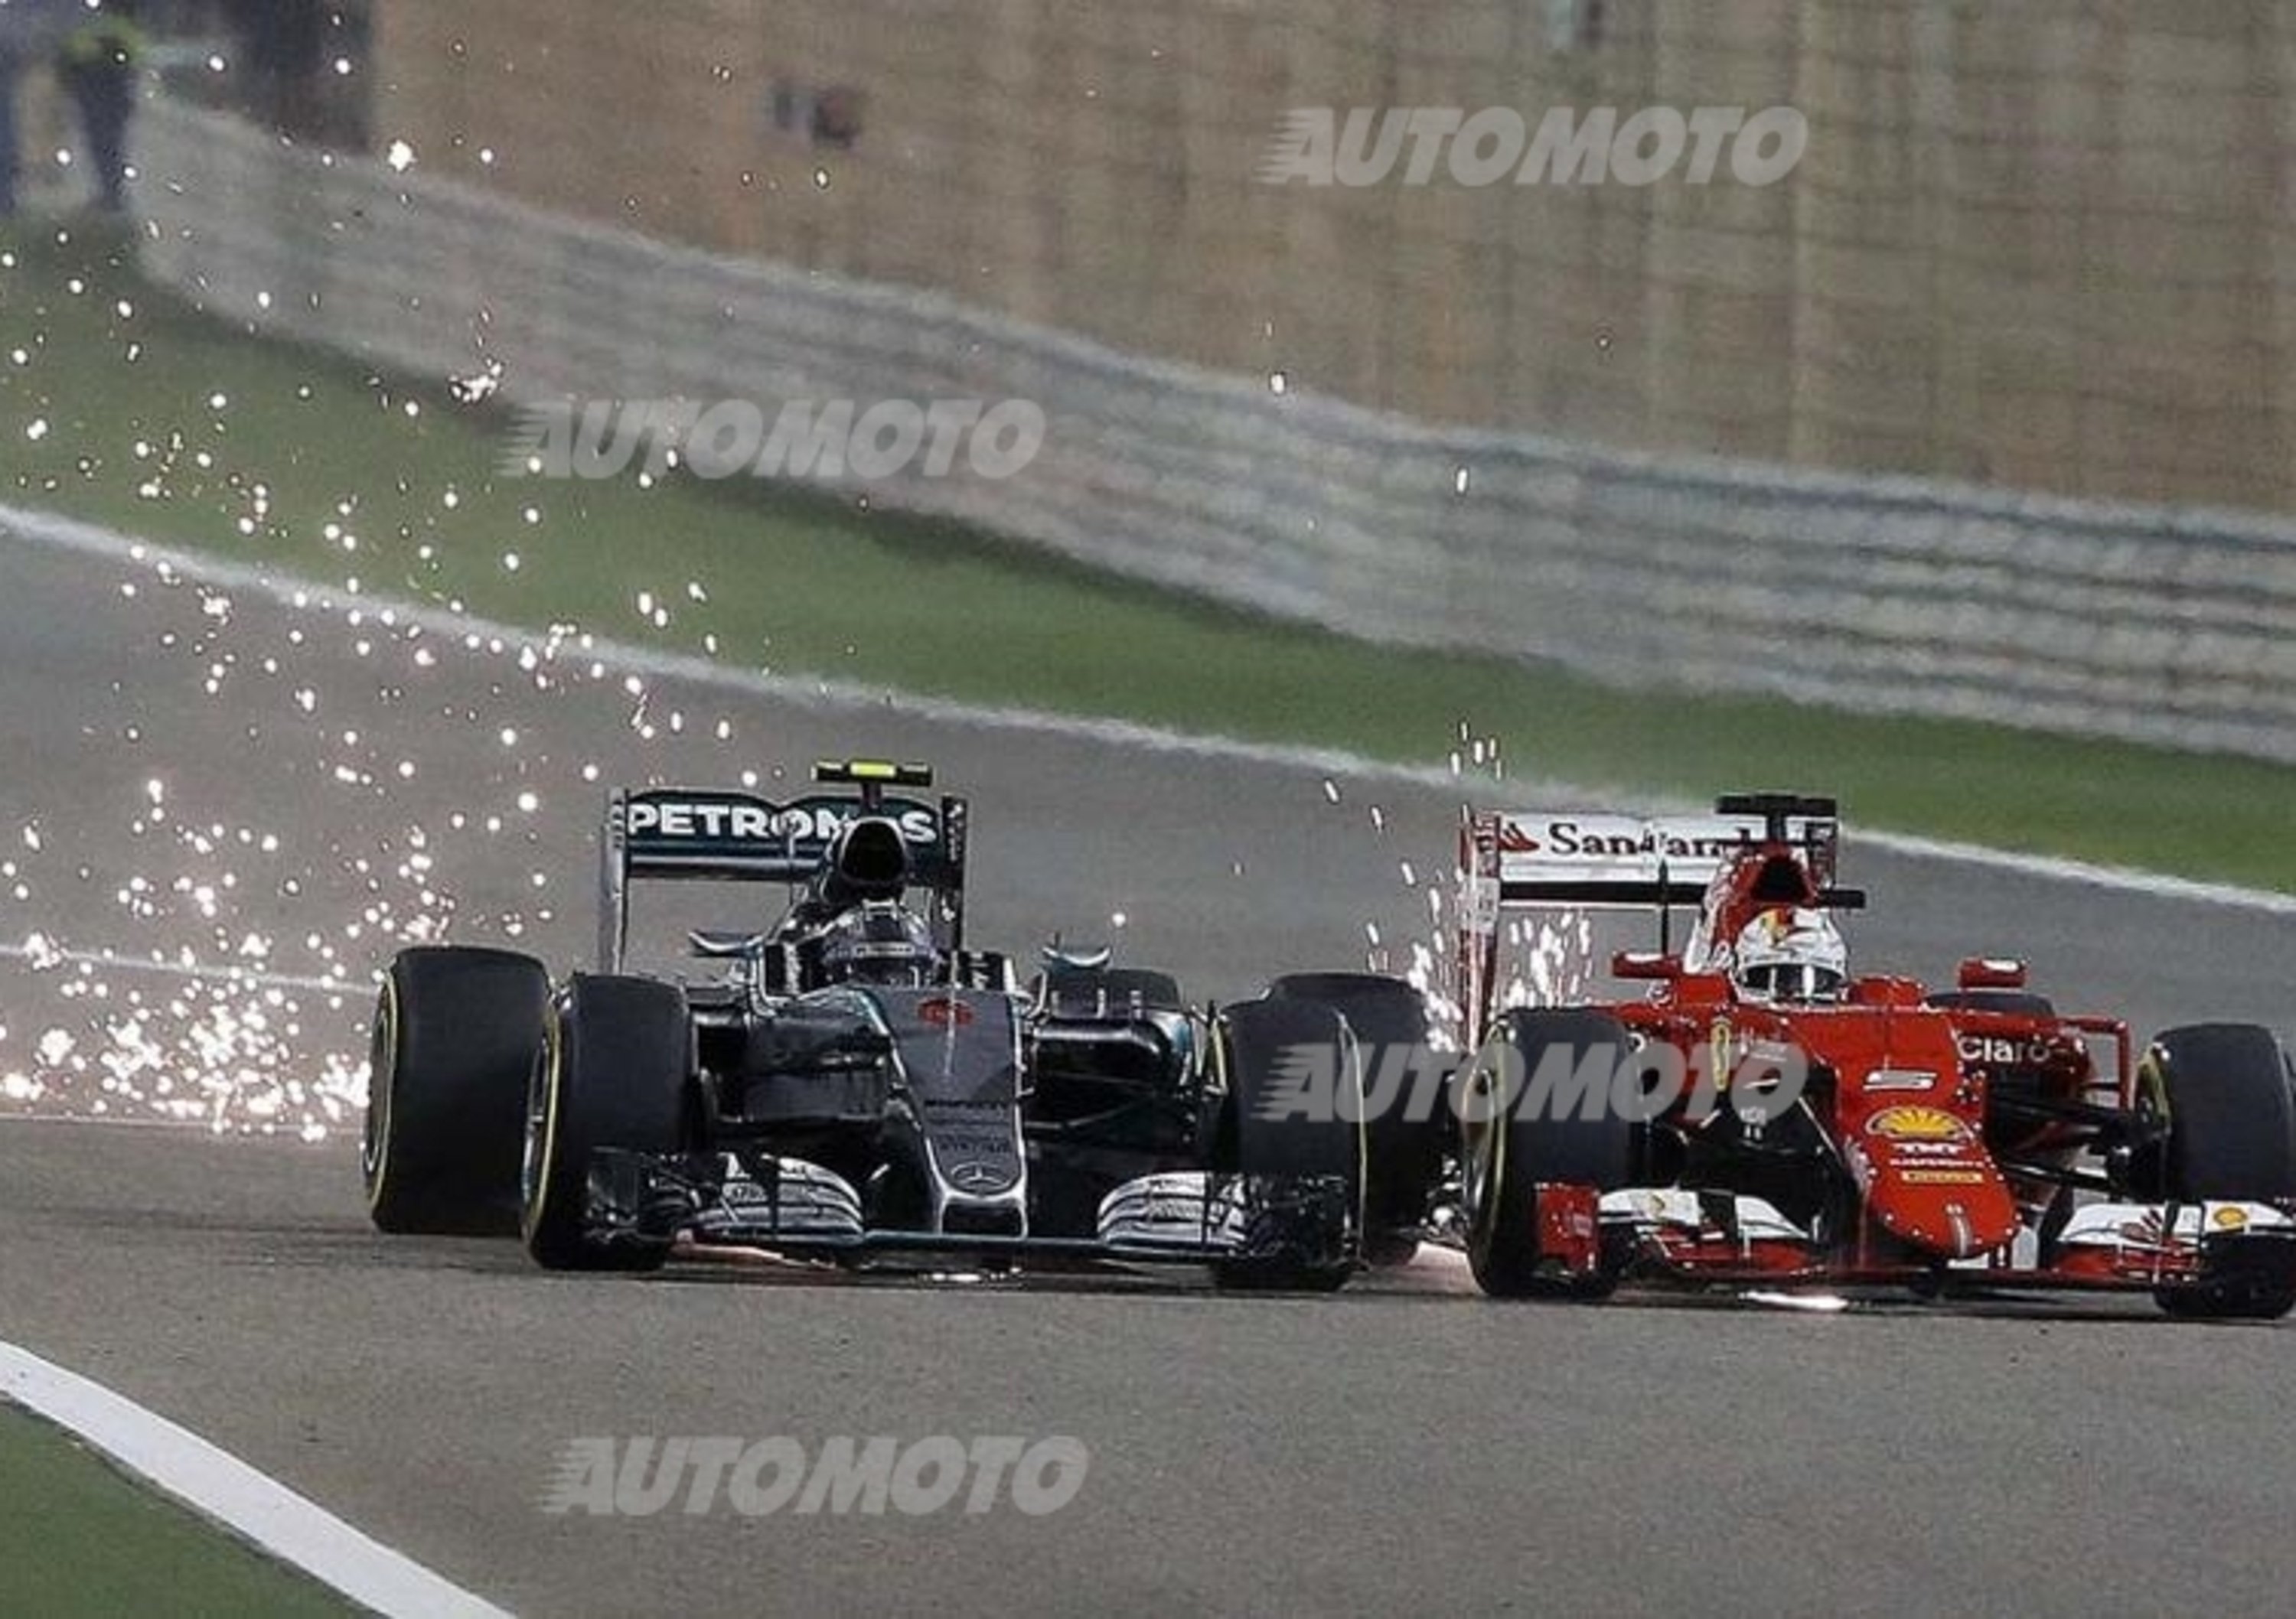 F1, Gp Bahrain 2015: Ferrari a podio grazie alla strategia